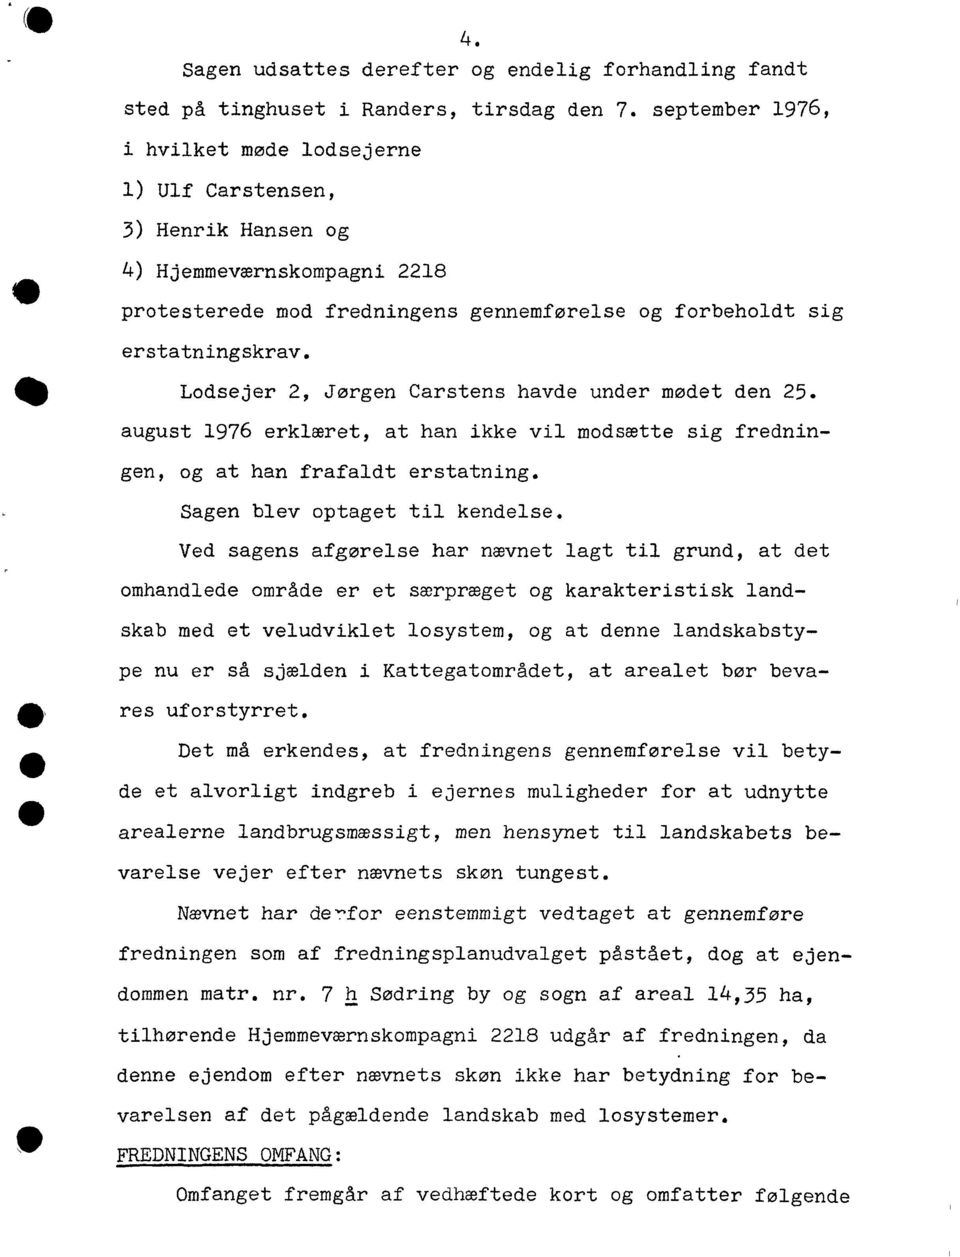 Lodsejer 2, Jørgen Carstens havde under mødet den 25. august 1976 erklæret, at han ikke vil modsætte sig fredningen, og at han frafaldt erstatning. Sagen blev optaget til kendelse.